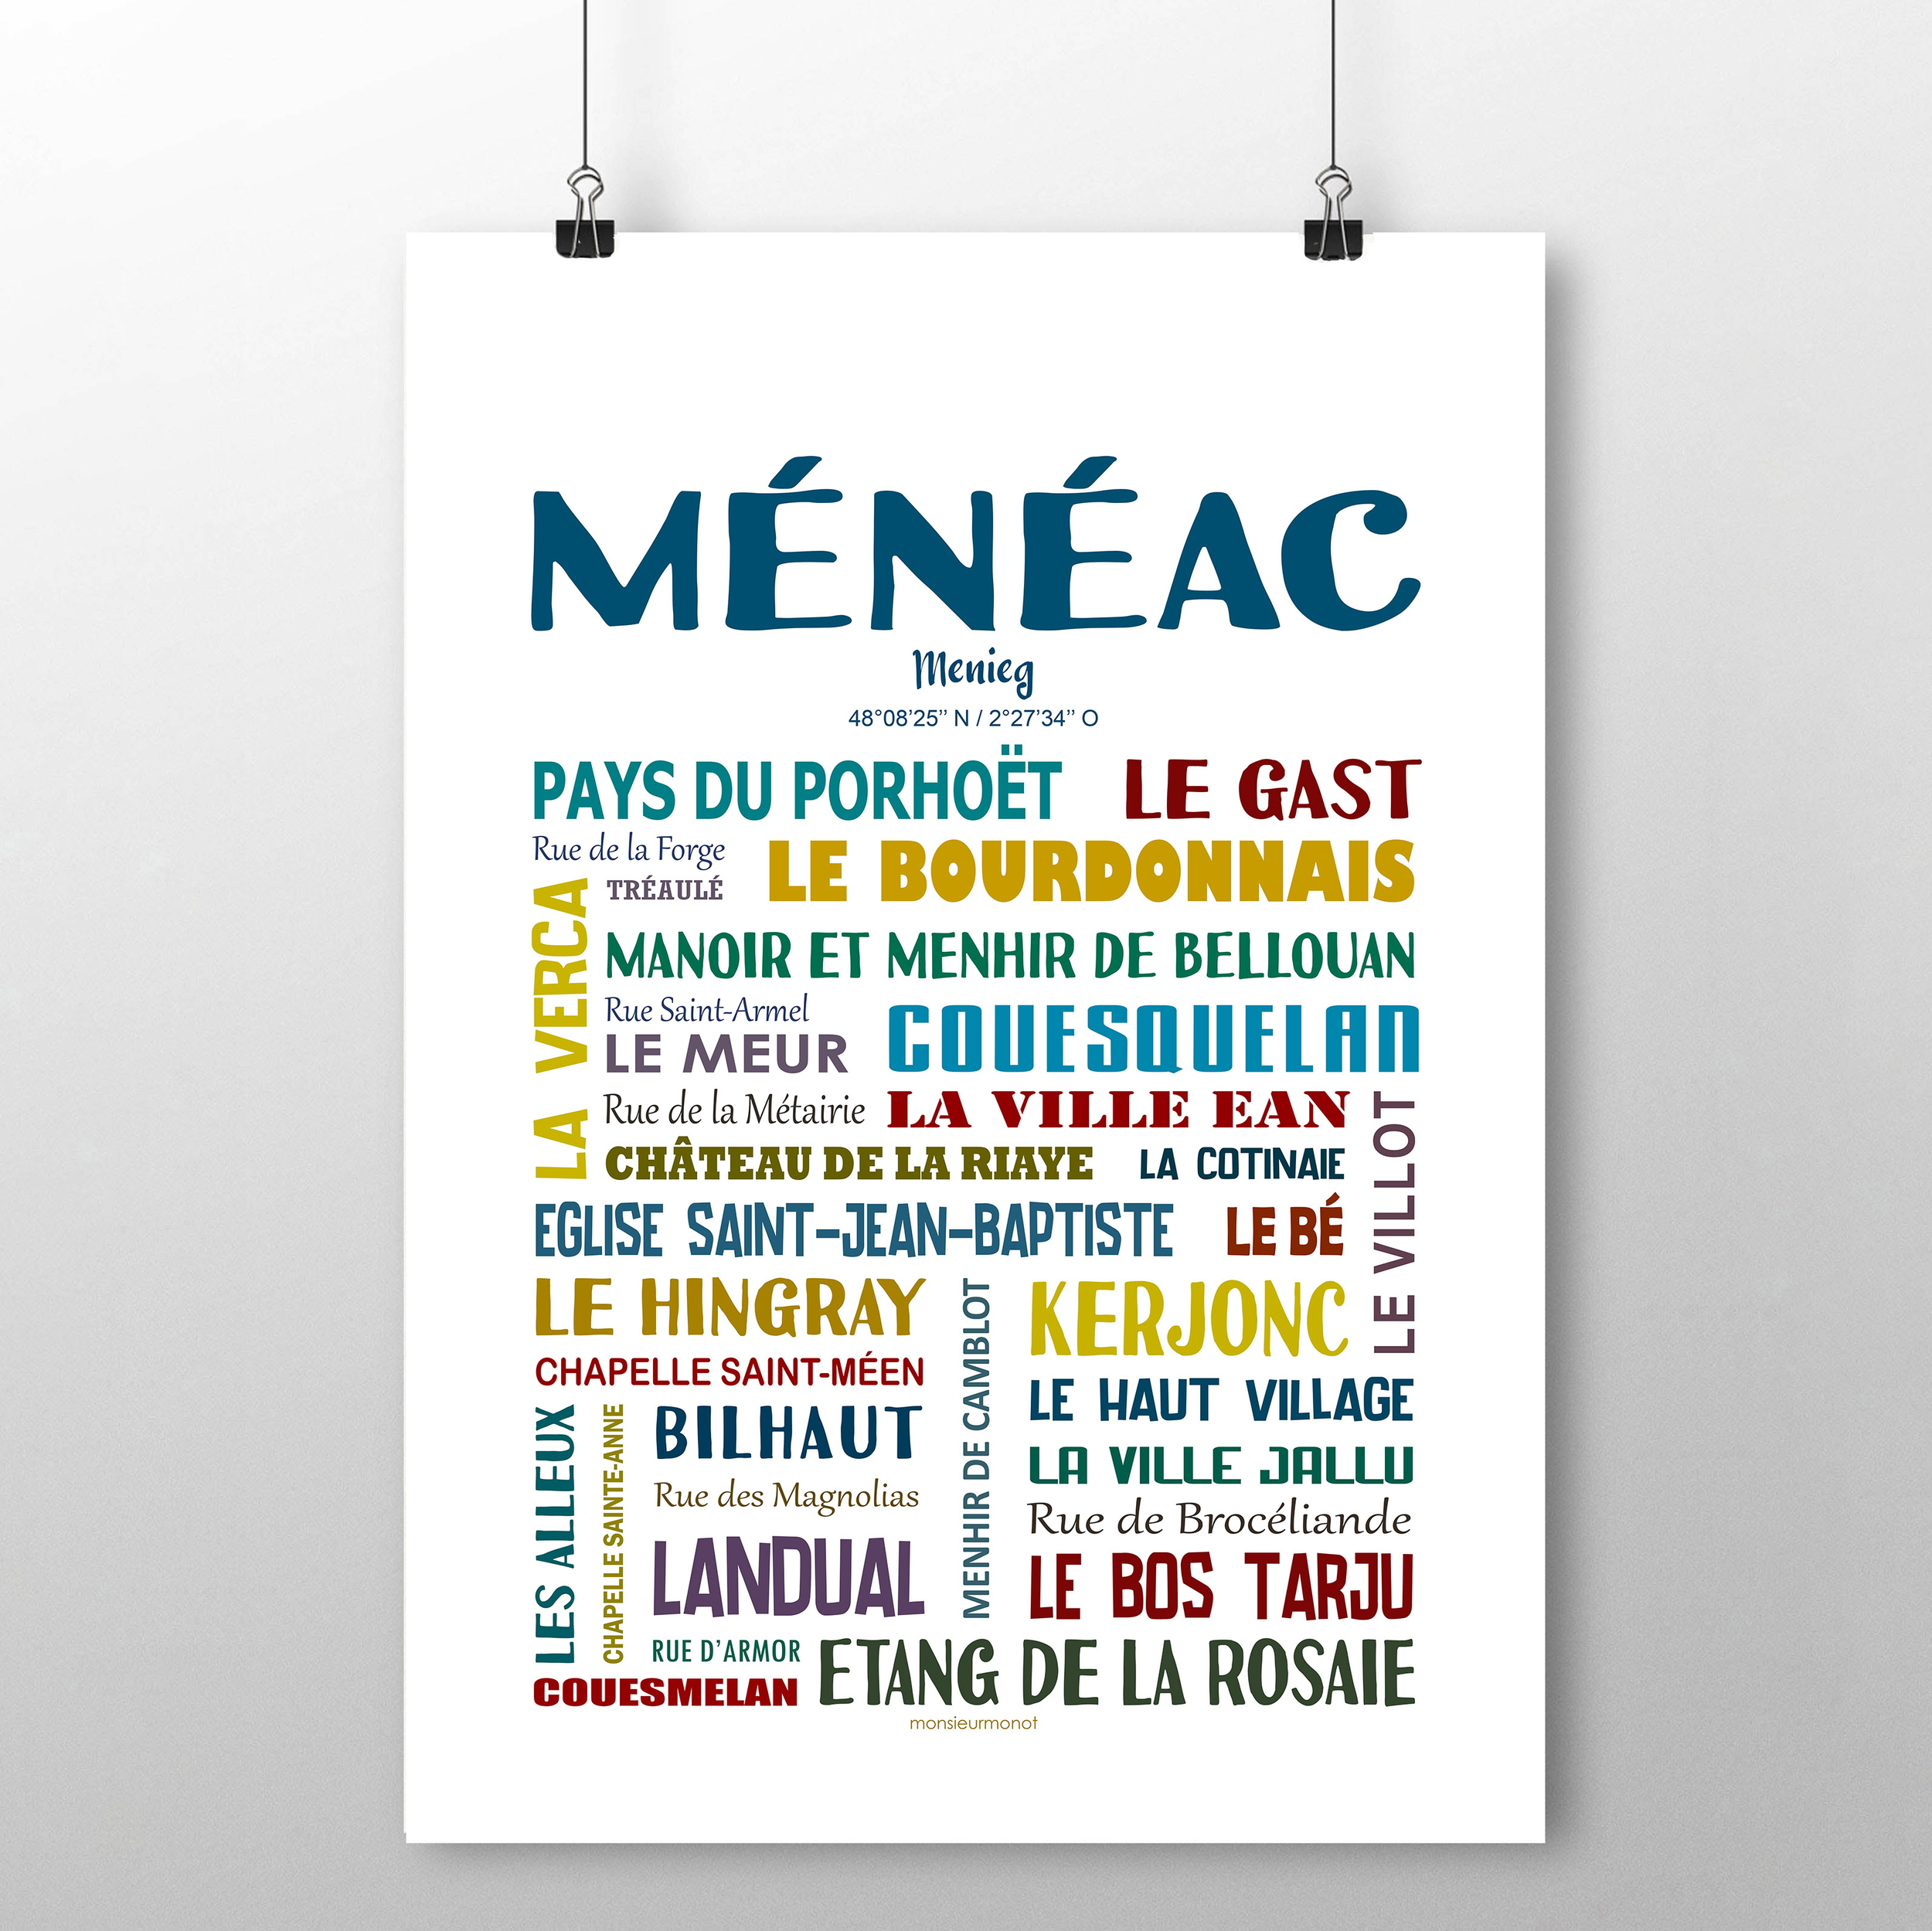 Ménéac 2